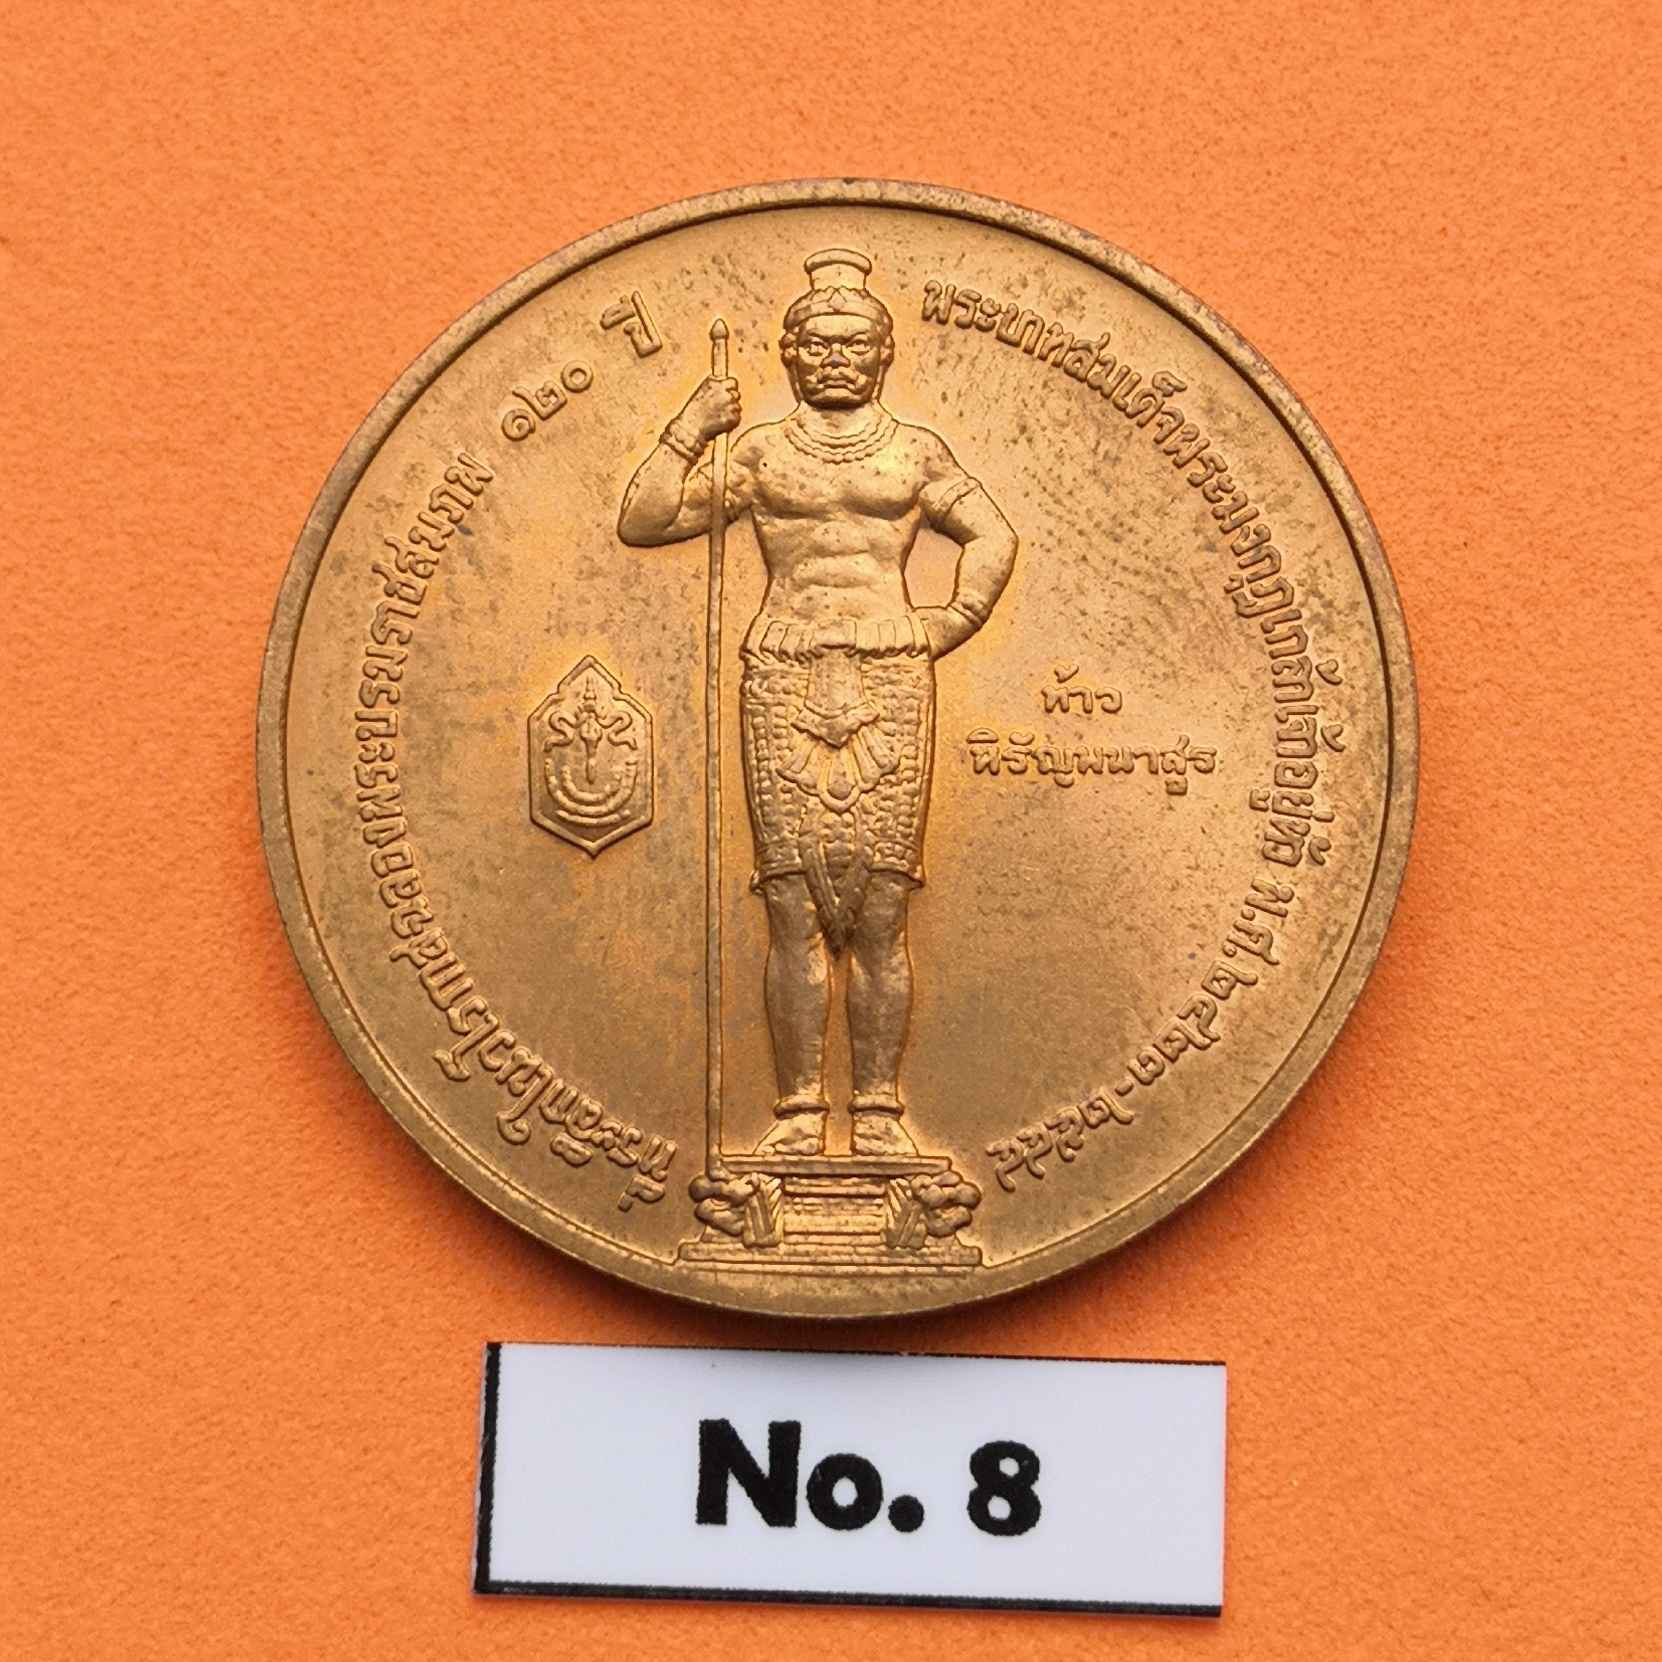 ภาพประกอบของ เหรียญท้าวฮู พระนิรโรคันตราย ท้าวหิรัญพนาสูร เทพผู้พิทักษ์รัชกาลที่ 6 ที่ระลึกในวโรกาสฉลองพระบรมราชสมภพ 120 ปี พระมงกุฏเกล้า